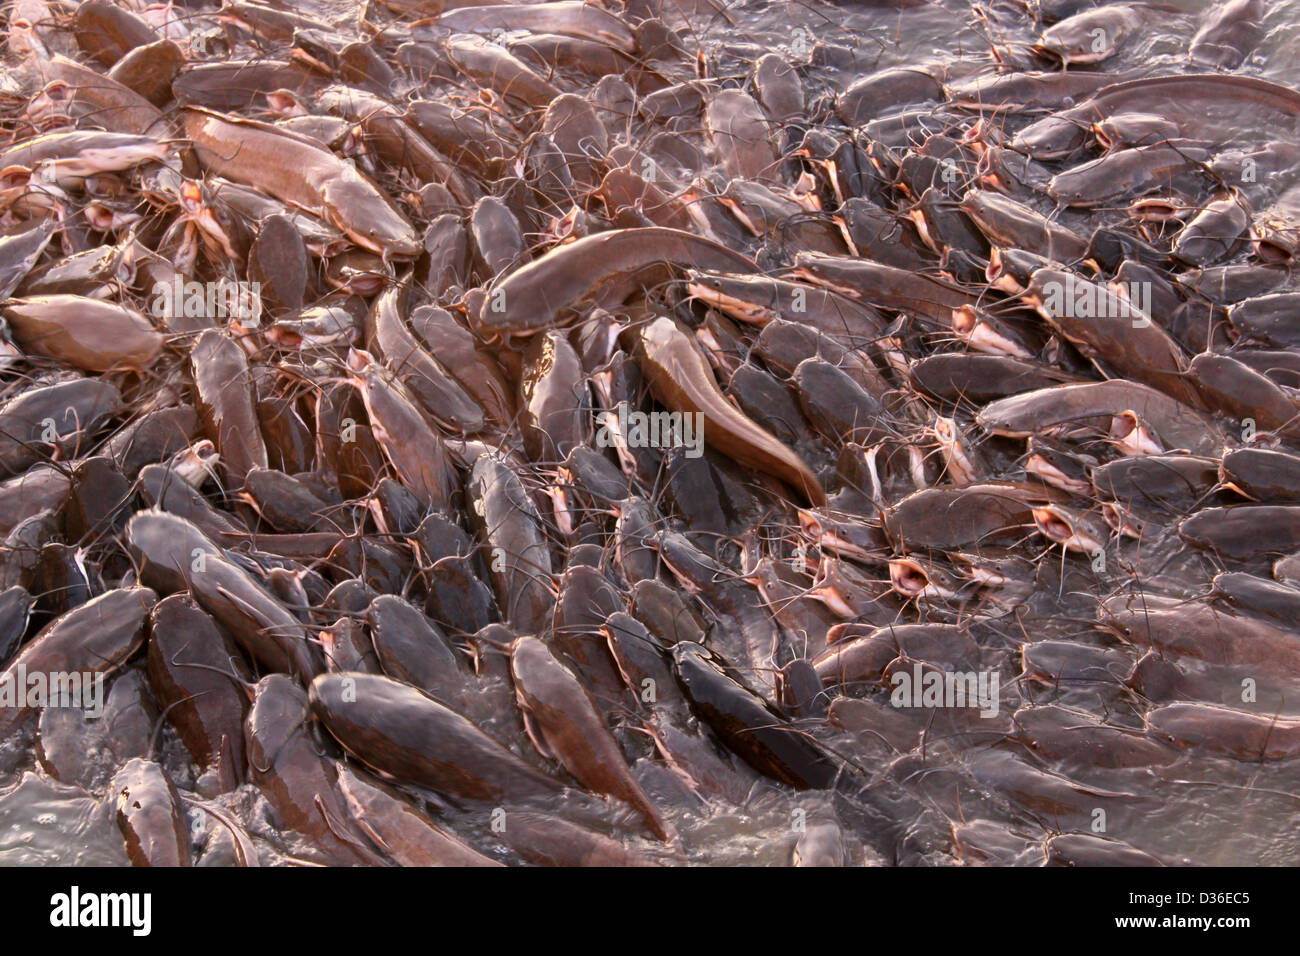 Cluster of catfish Gadi Sagar Lake Jaisalmer Western Rajasthan India Stock Photo